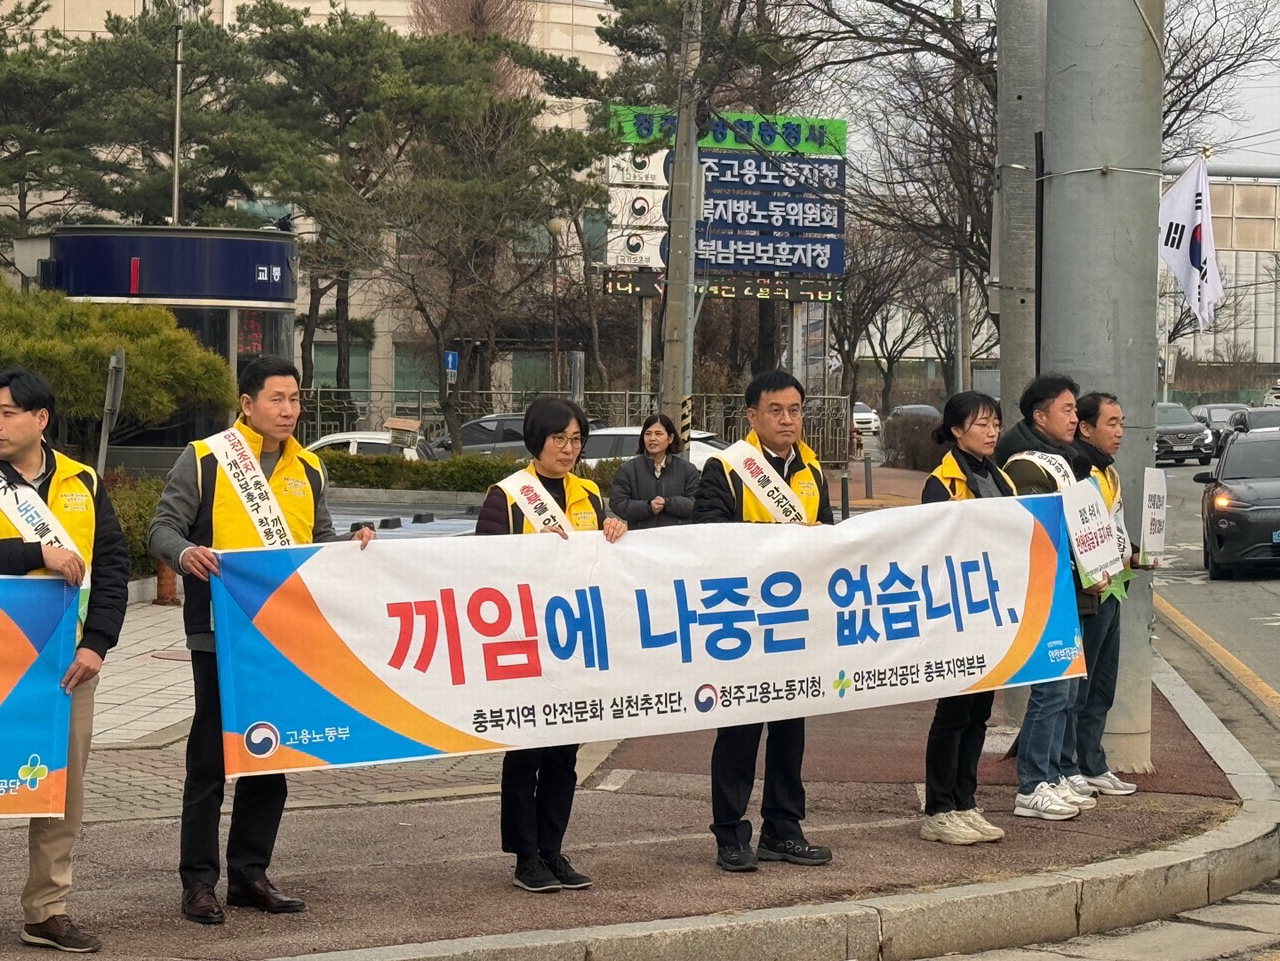 고용노동부 청주지청 임직원들이 안전문화 확산을 위한 캠페인을 펼치고 있다.  /고용노동부 청주지청